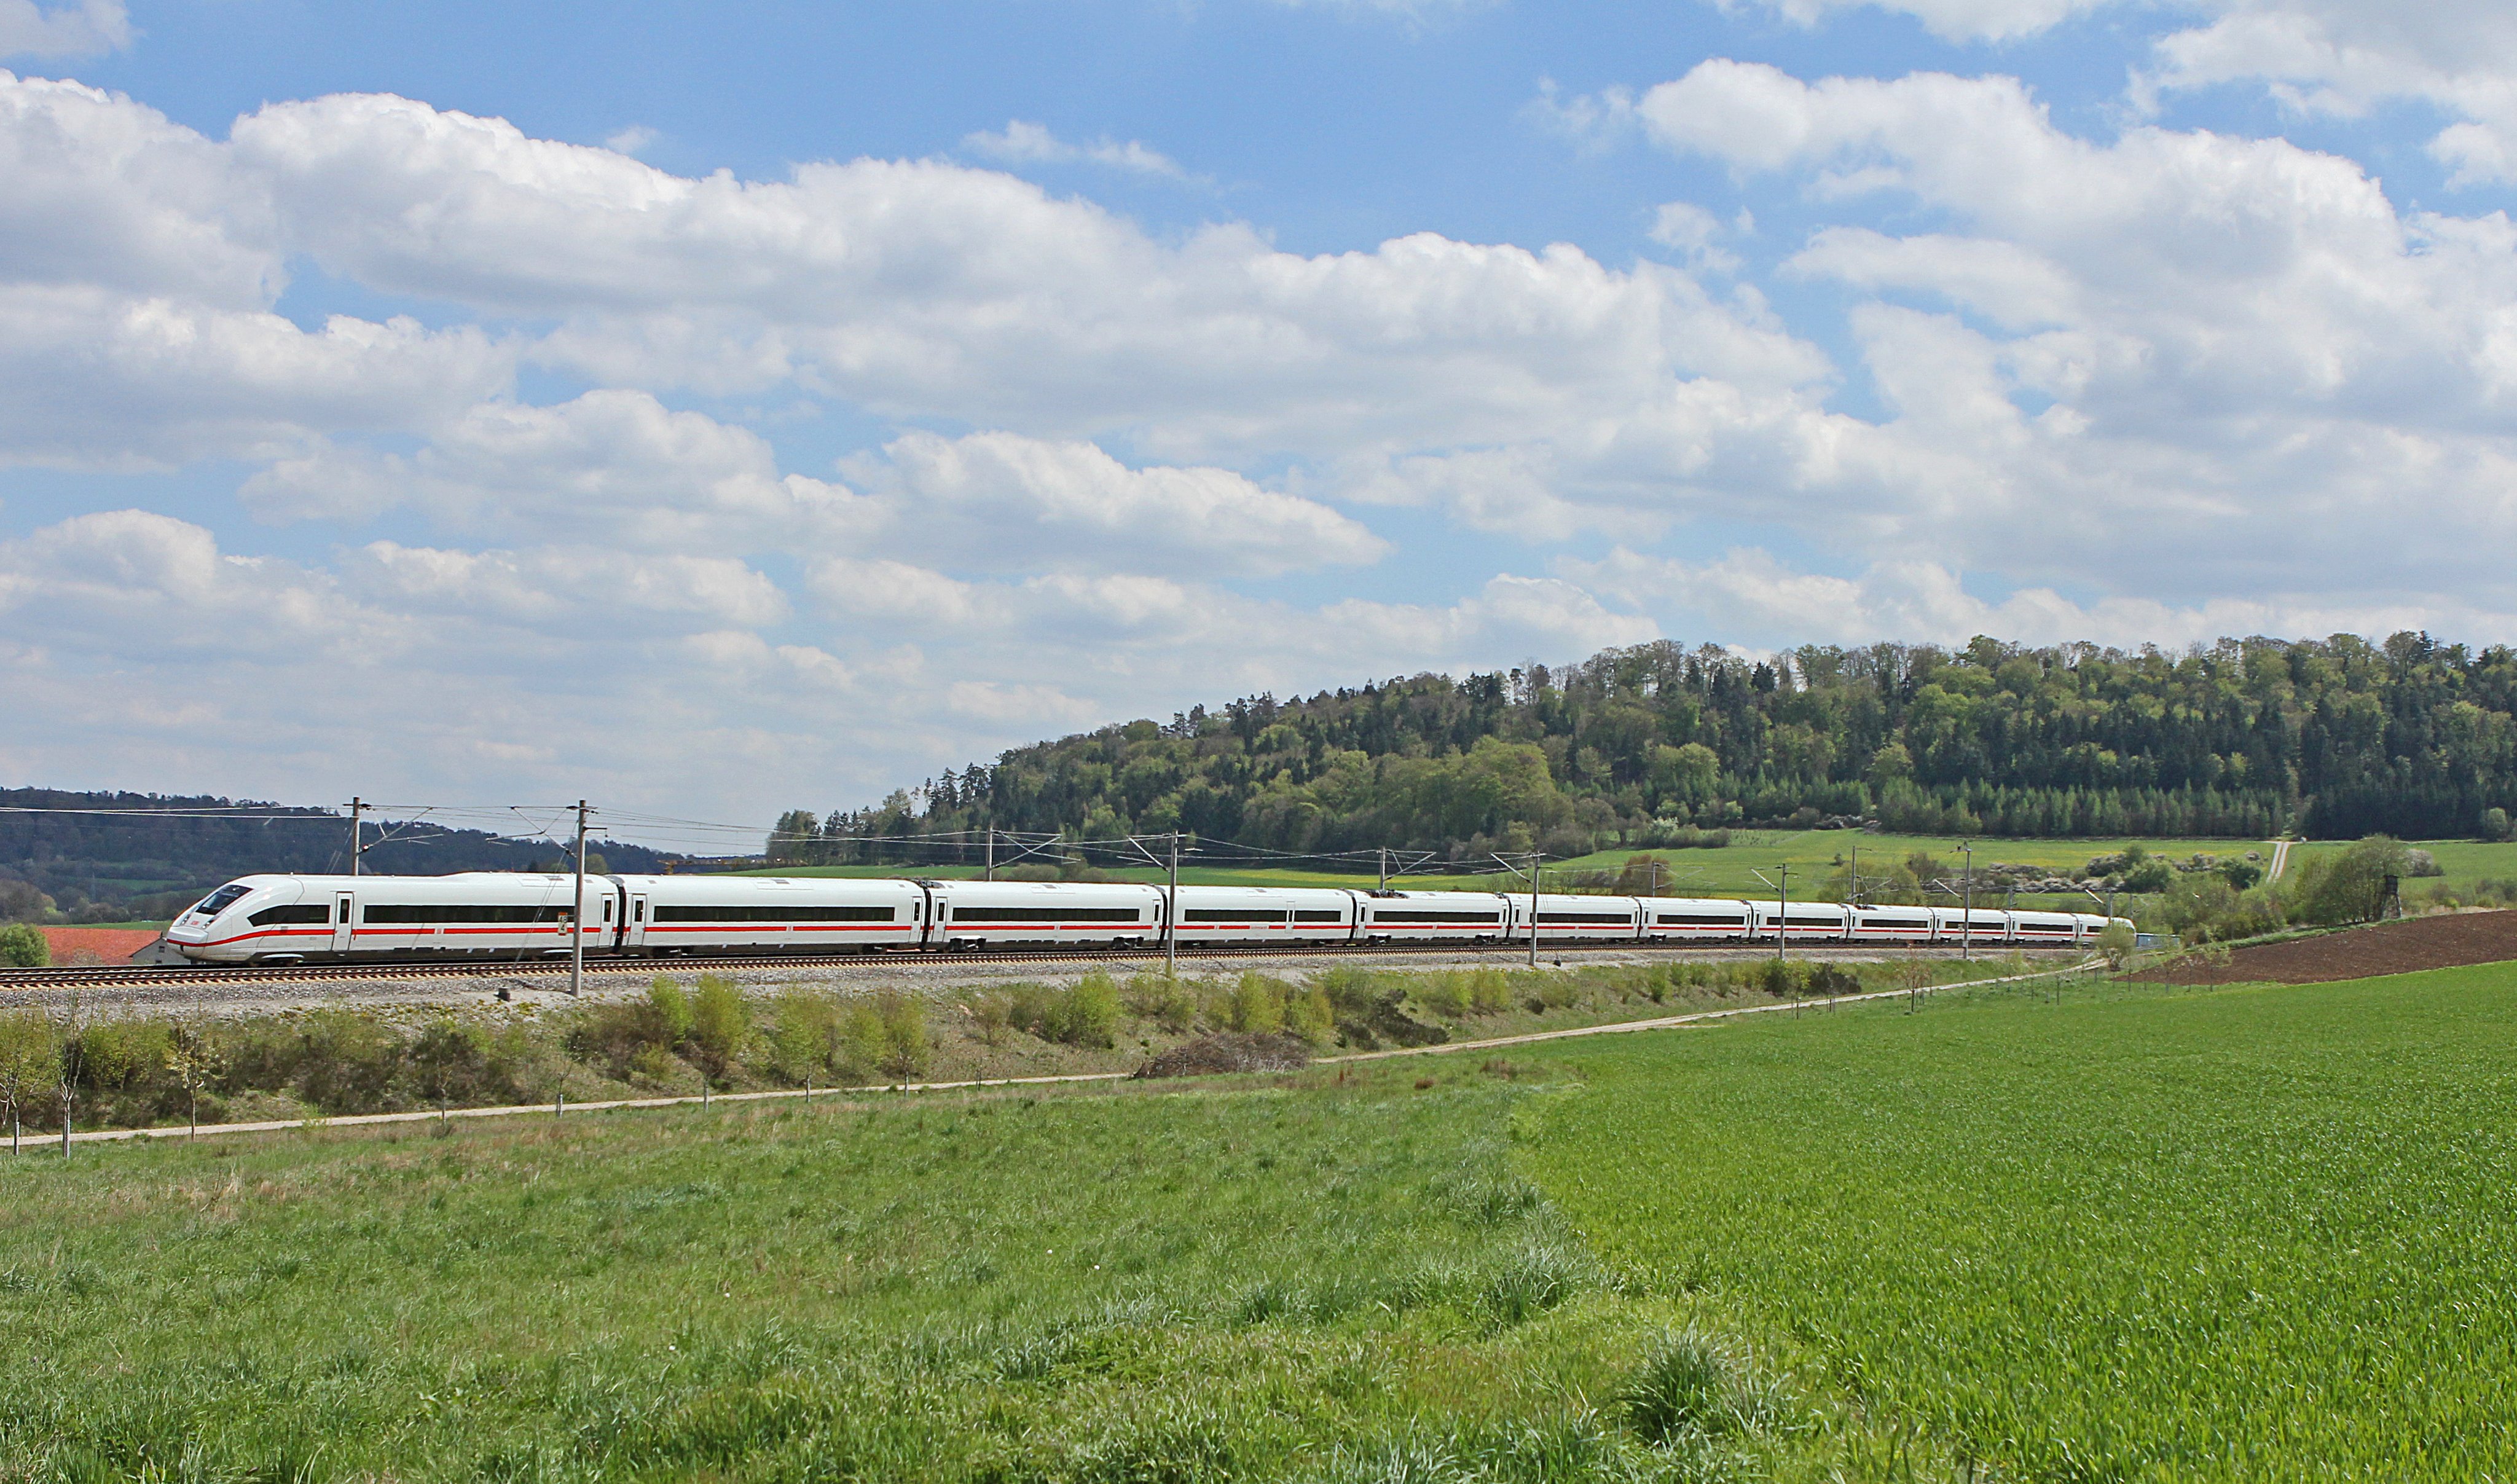 320 km/h i kolem Přerova – nový úsek vysokorychlostní trati pomůže Olomouci